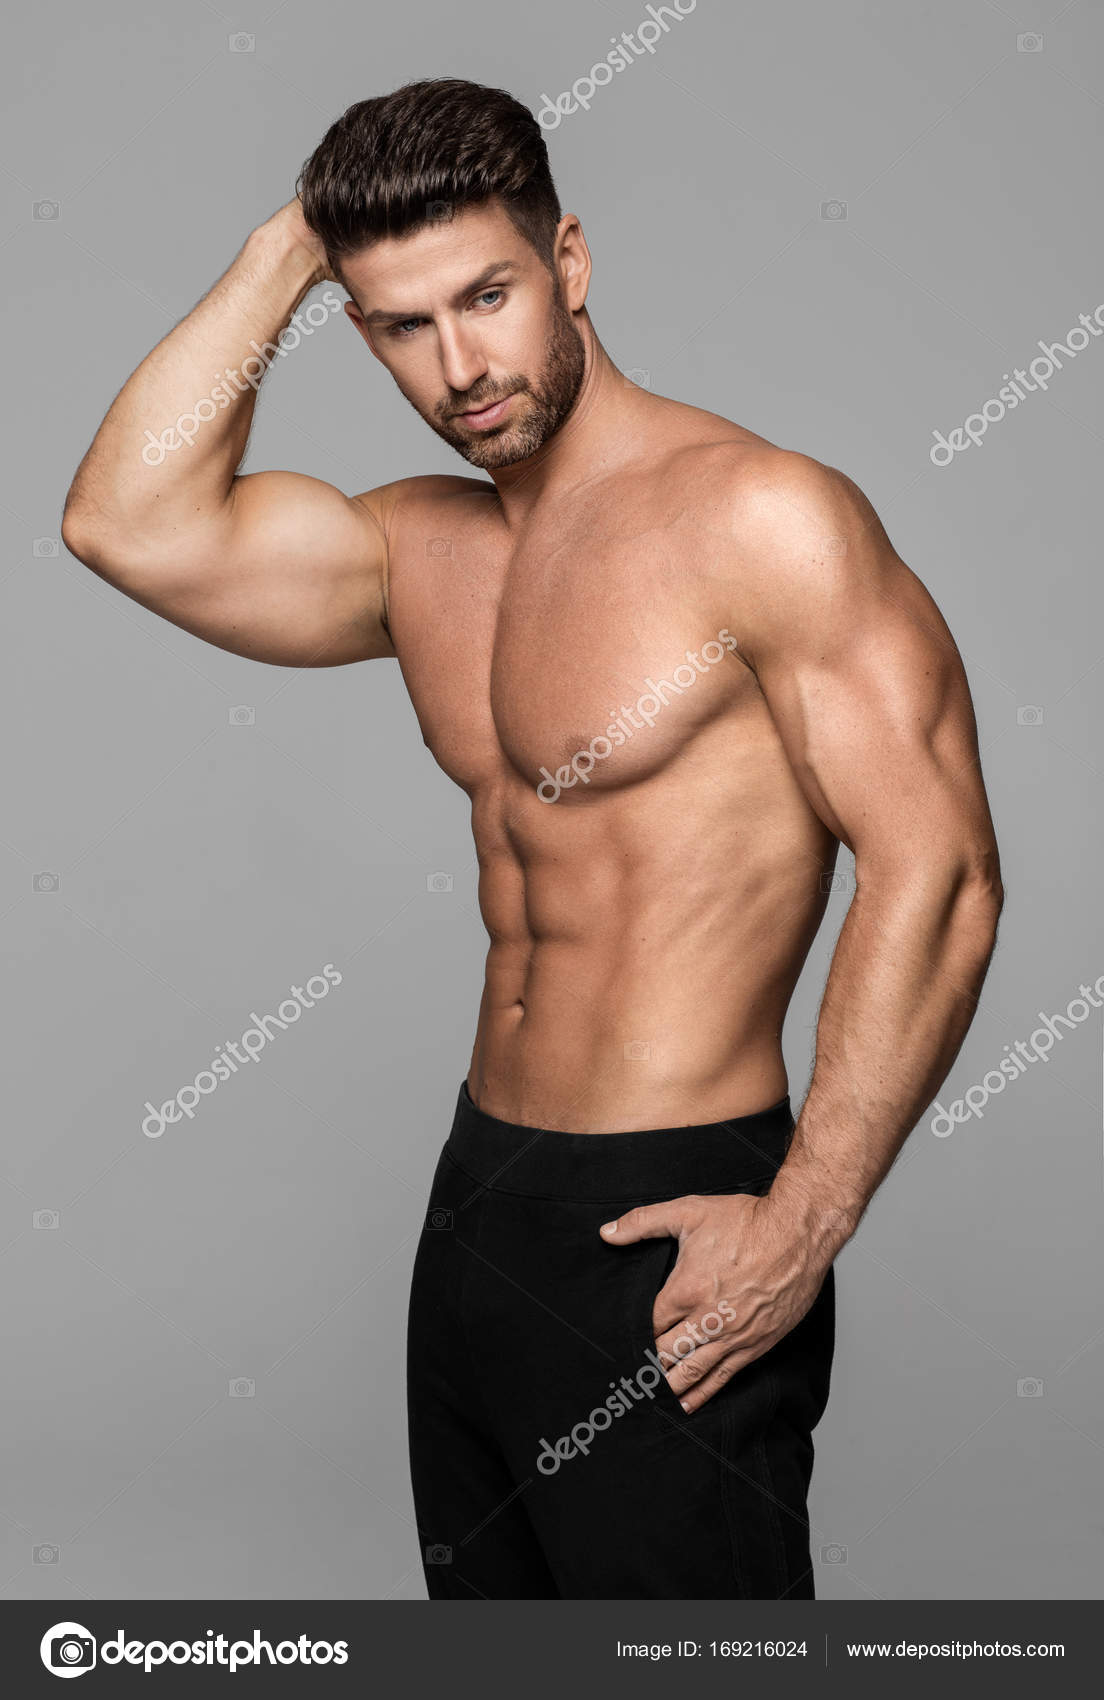 Male Modeling Photoshoot | Photoshoots of Models Best Portfolio shoot